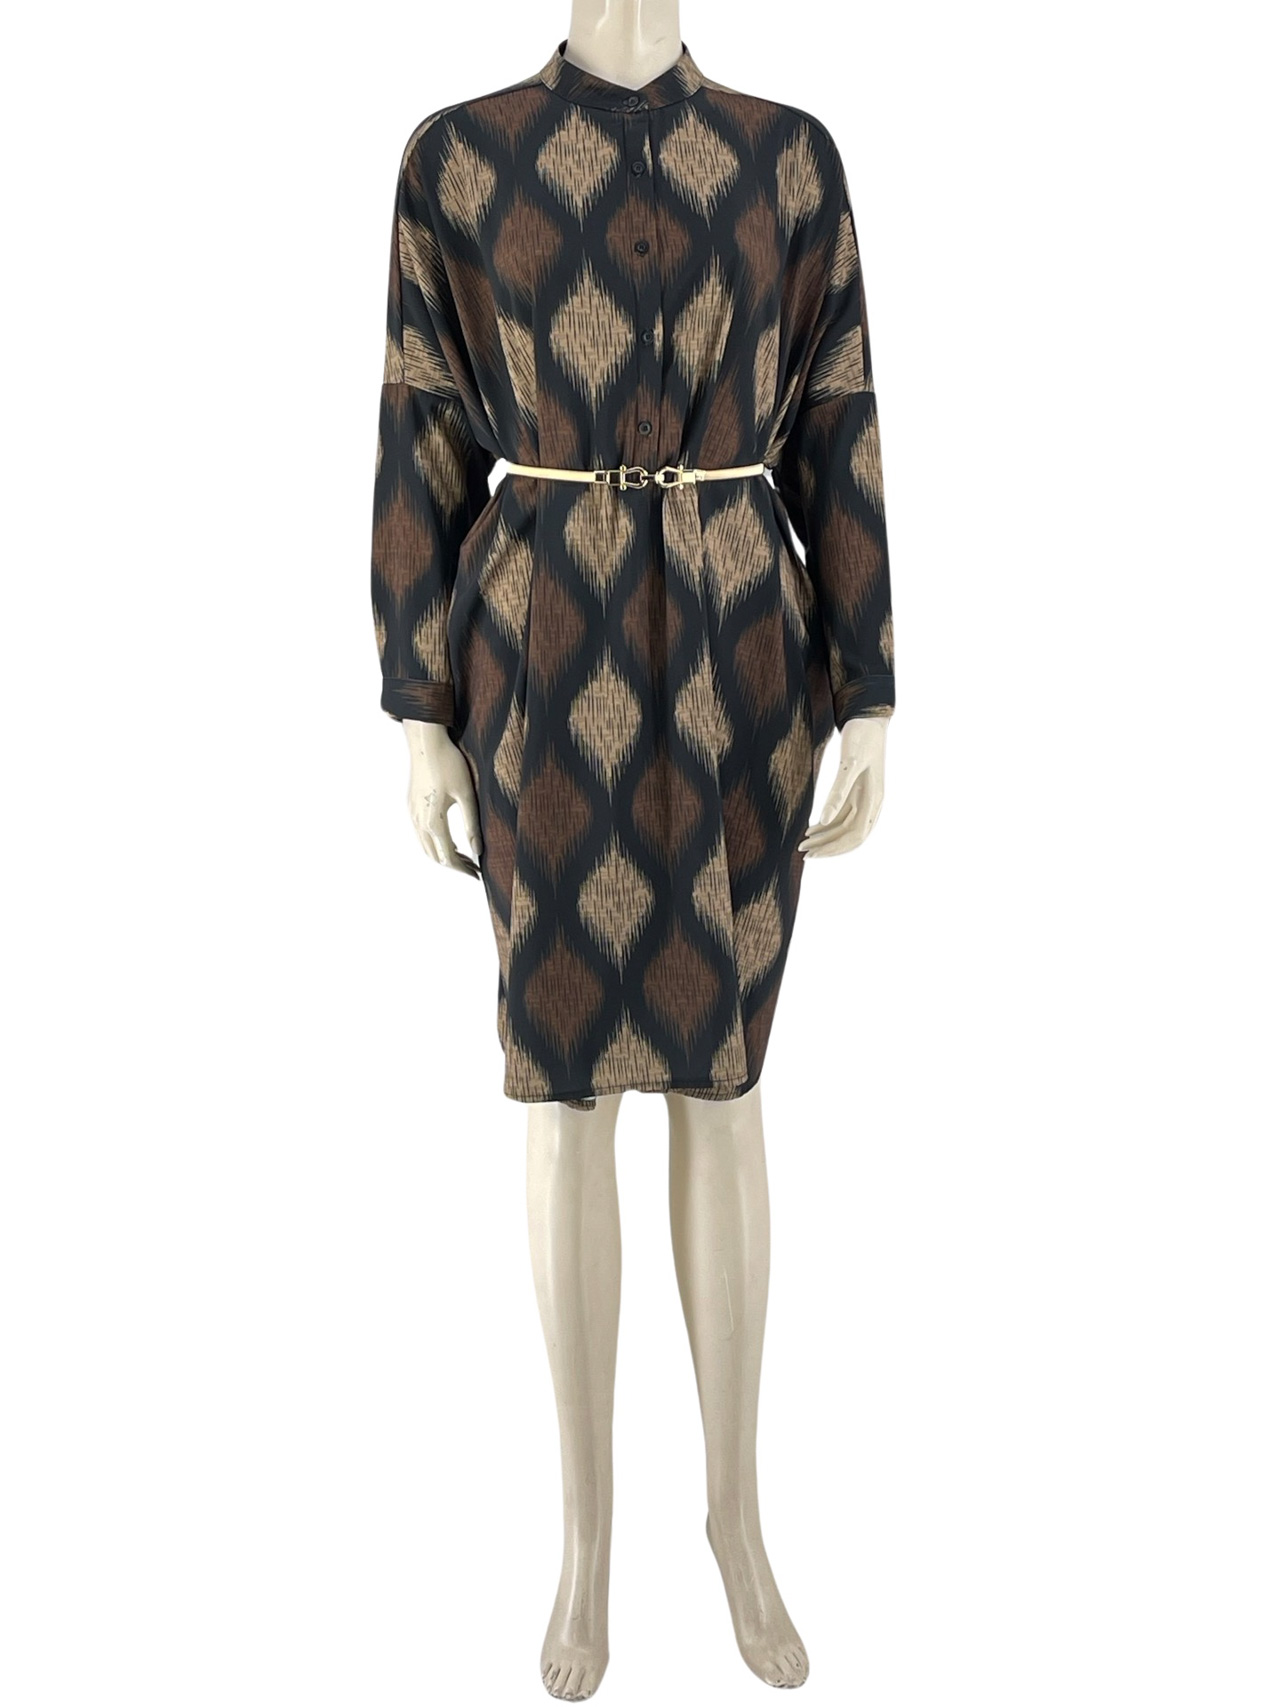 Φόρεμα over size με μάο γιακά και κουμπάκια κωδ. P5838 μπροστινή όψη- μαύρο-πούρο